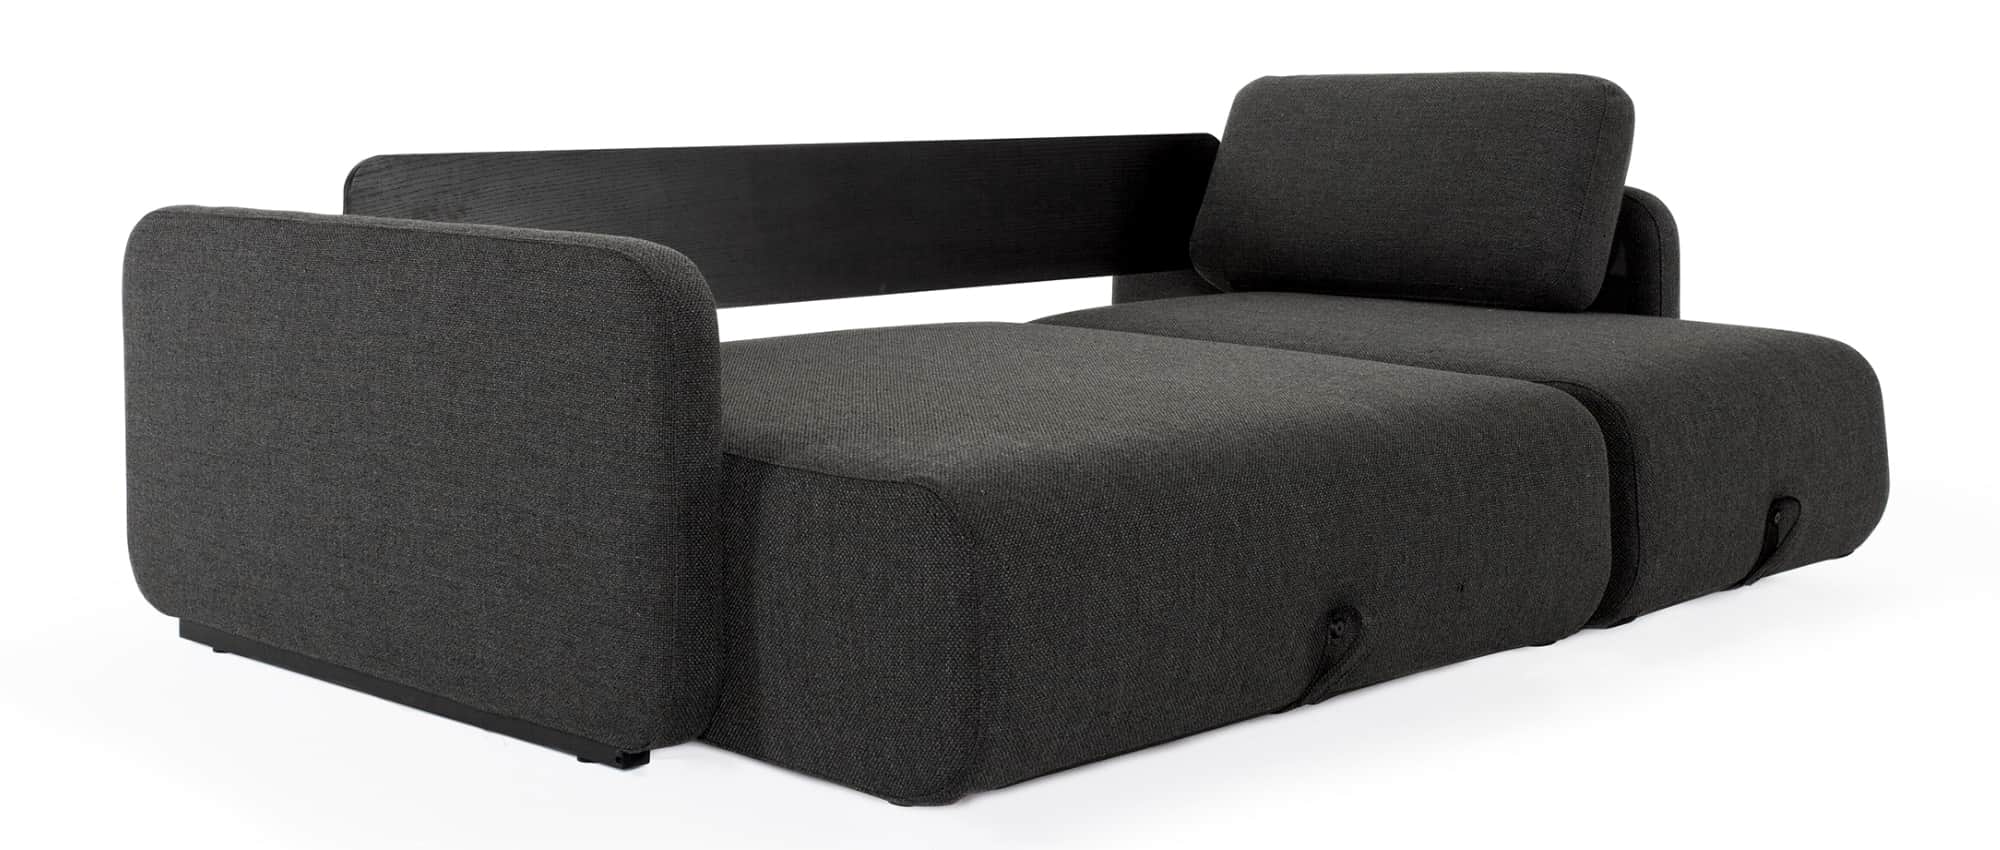 VOGAN Schlafsofa von Innovation mit Longchair, L-Sofa mit Armlehnen und Gästebett-Funktion - 120x200 cm